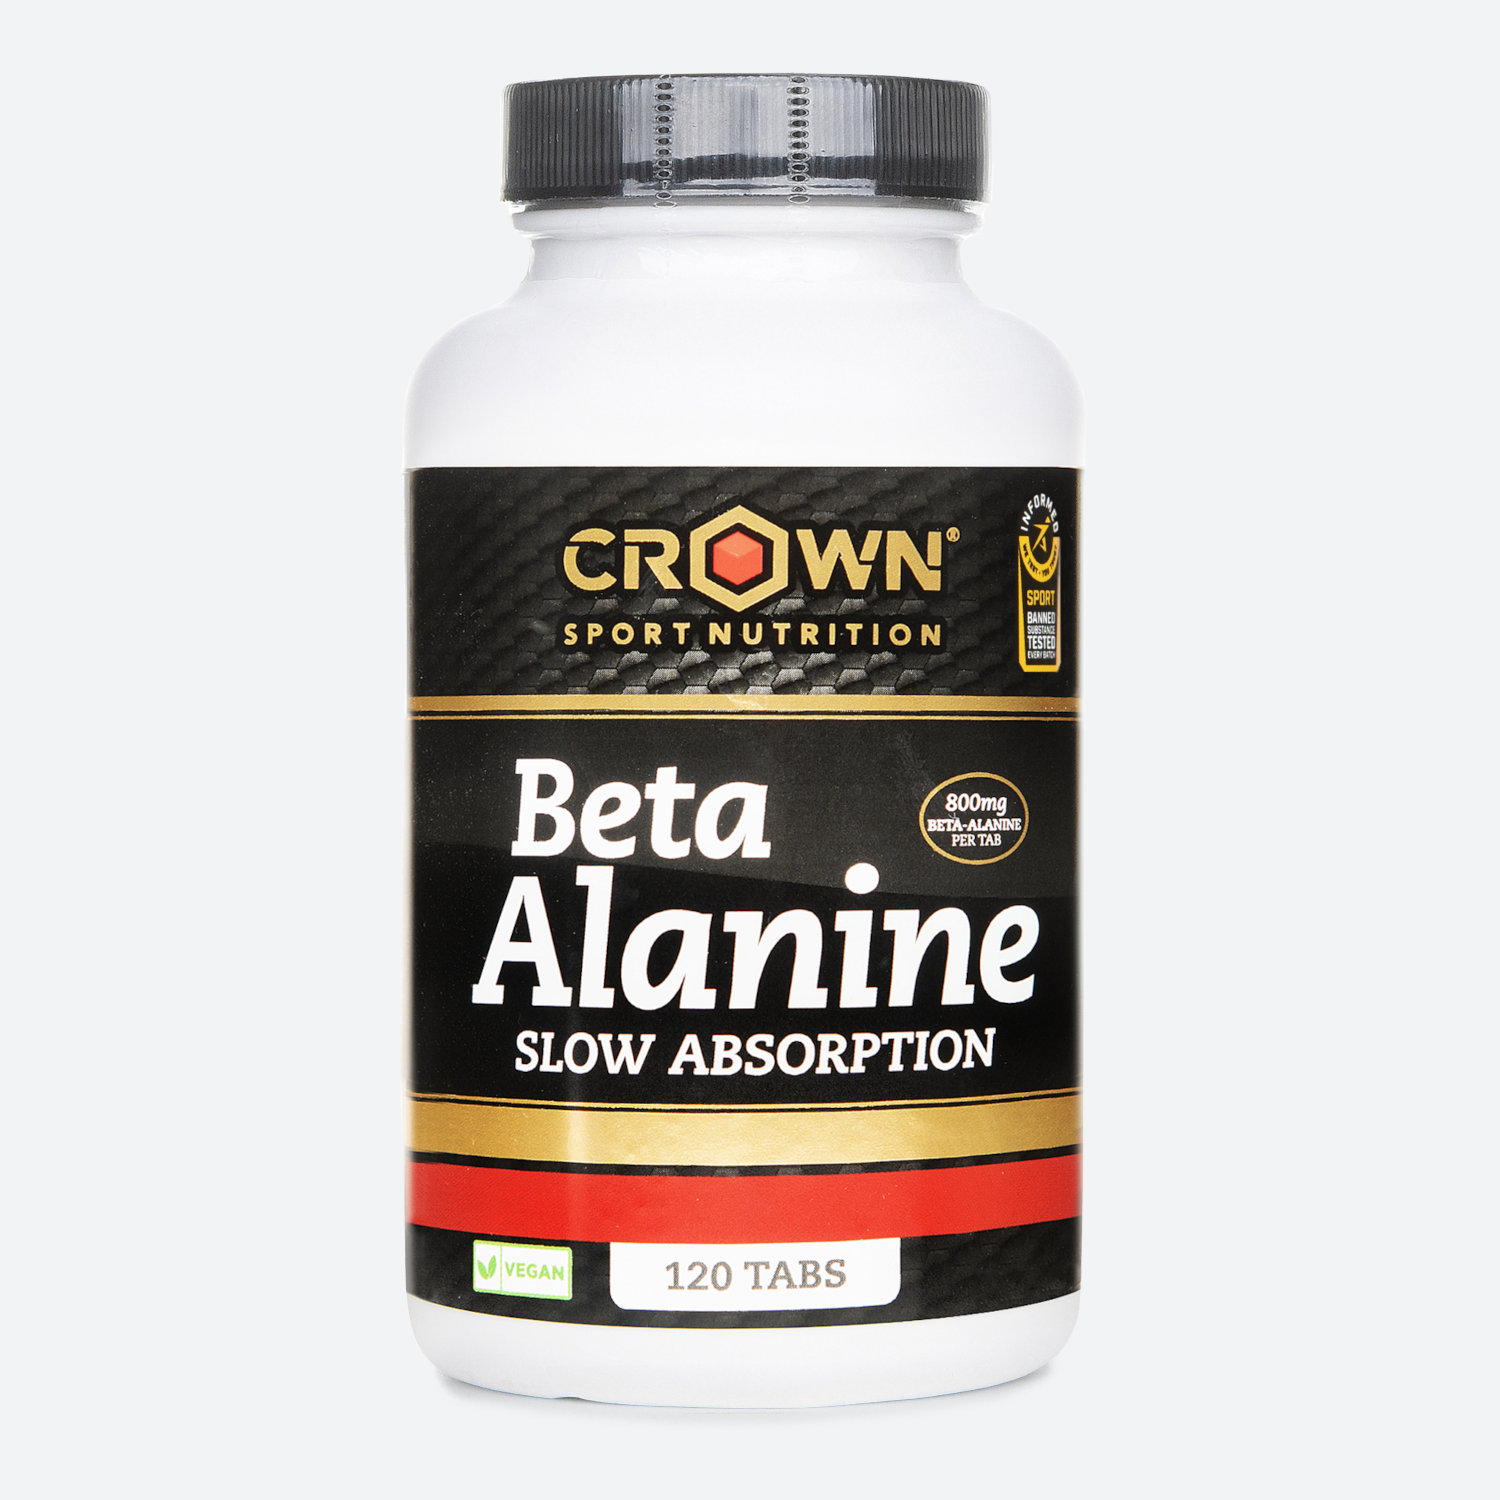 Bote De Aminoácidos No Esenciales ‘beta Alanine Slow Absortion‘ 120 Cápsulas -  - 